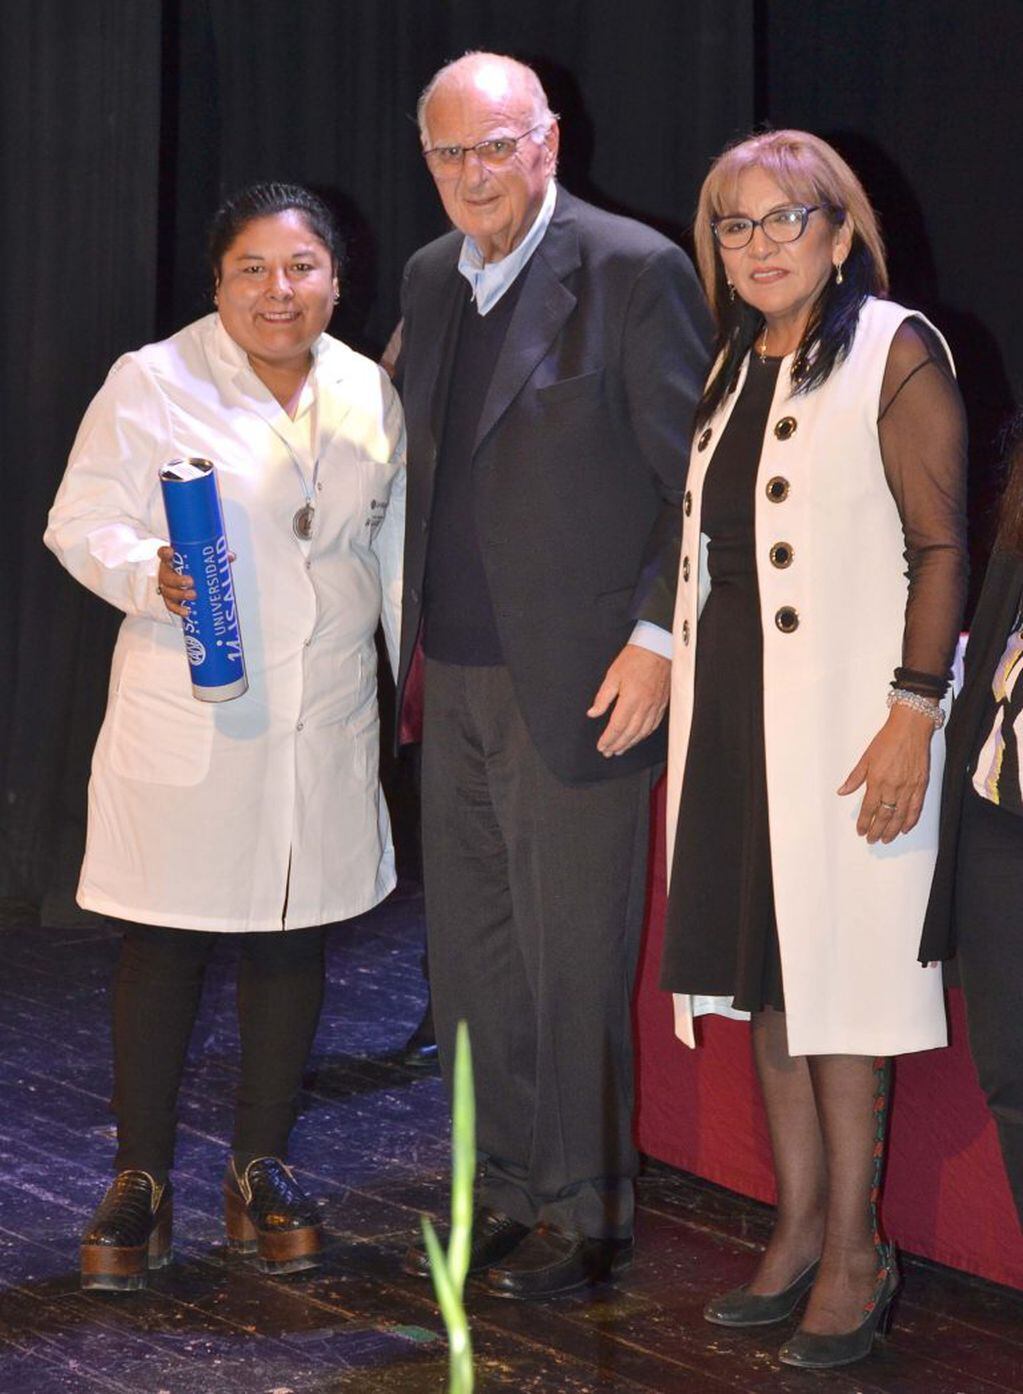 Carlos West Ocampo y Yolanda Canchi entregaron los diplomas a las nuevas enfermeras universitarias.